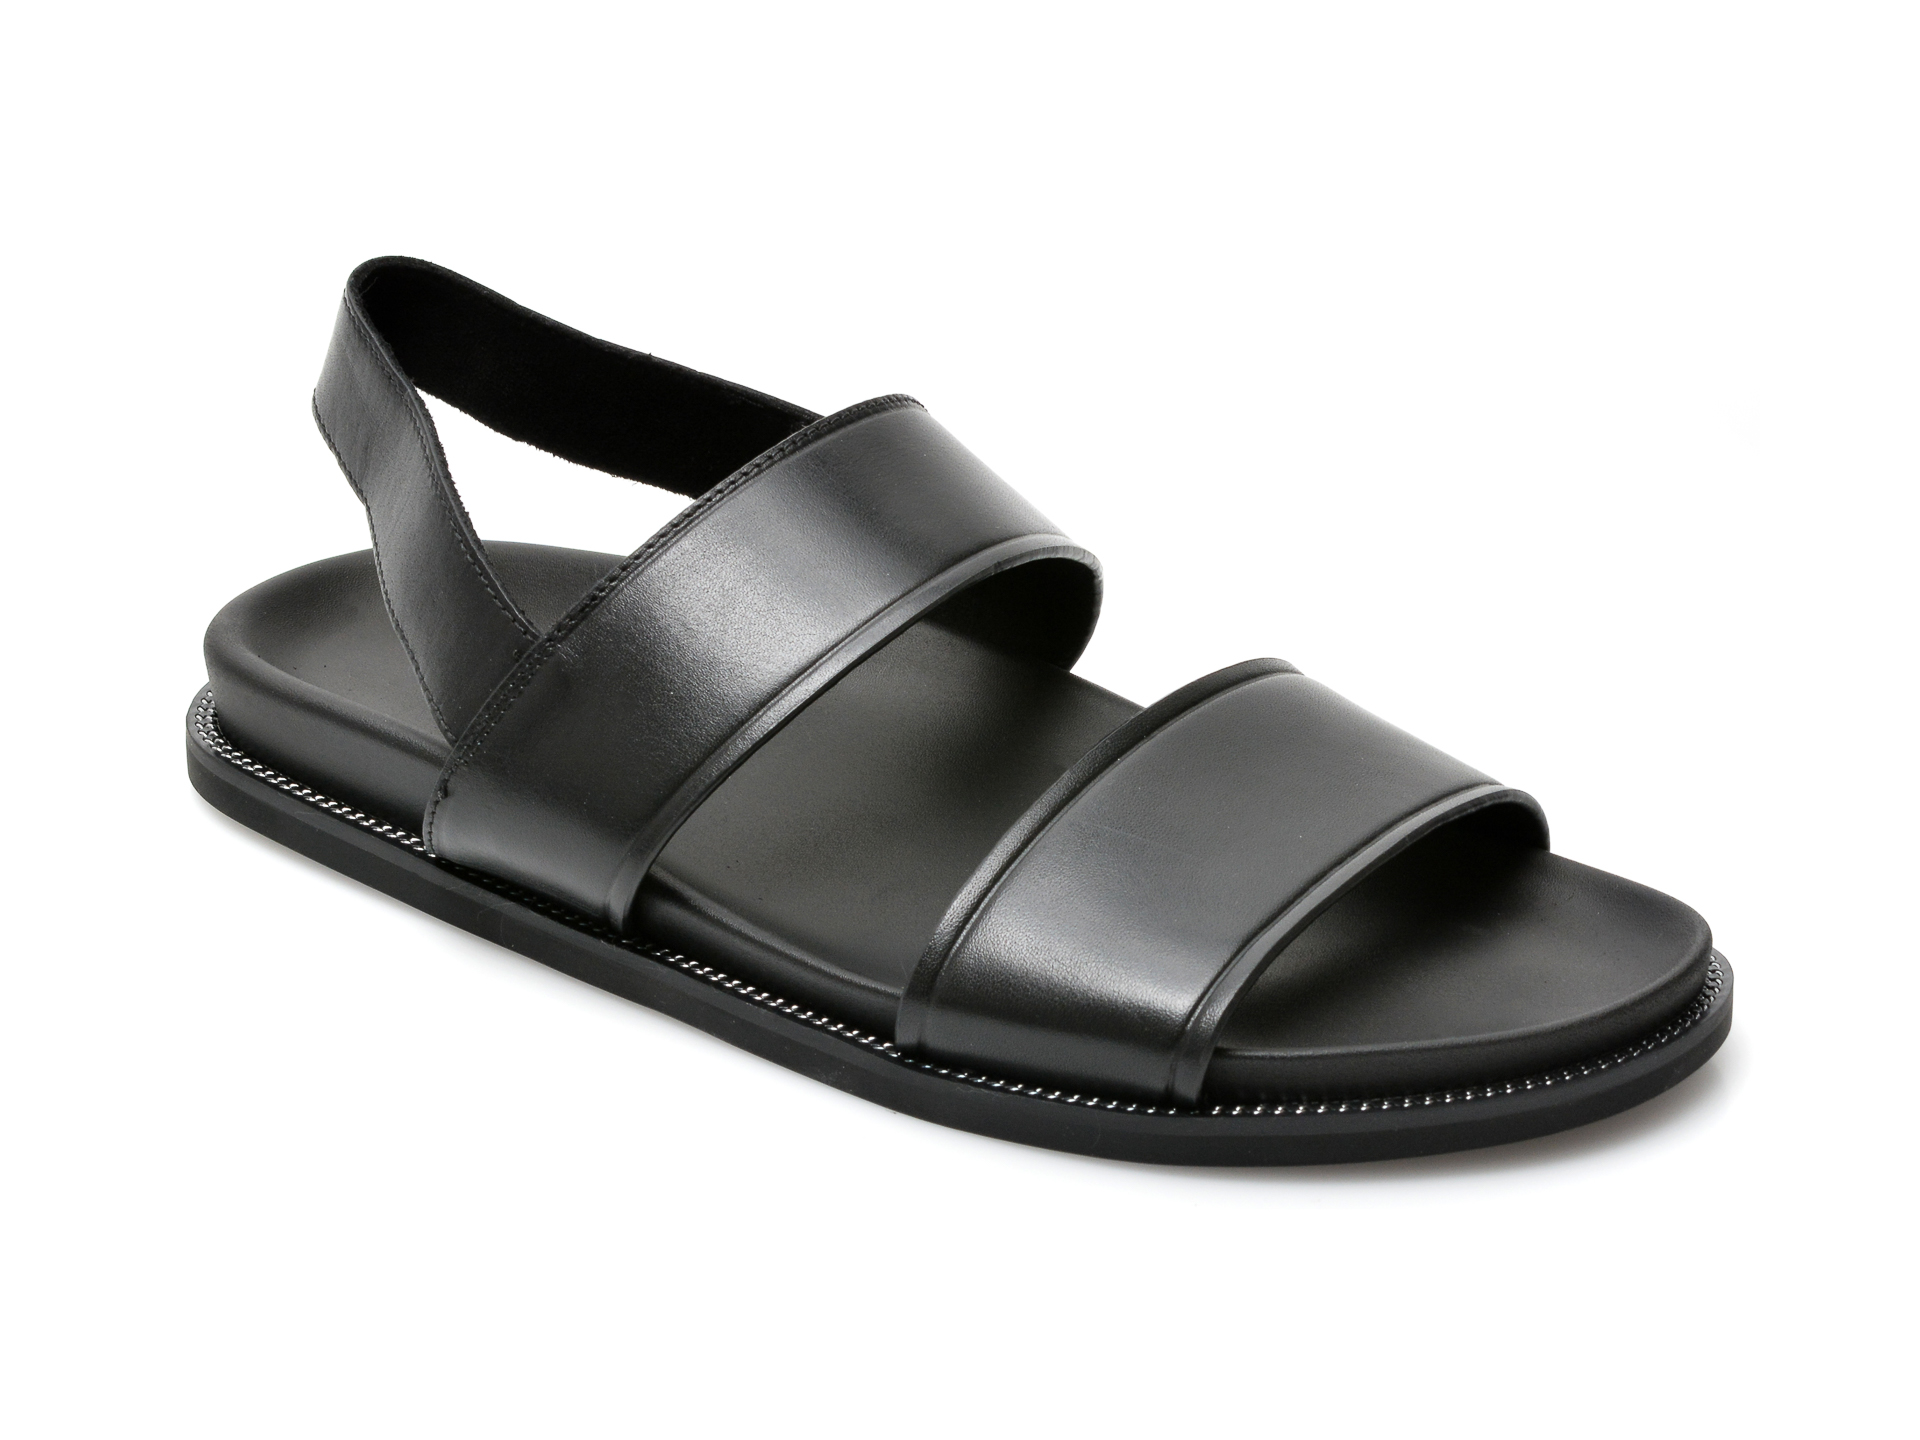 Sandale ALDO negre, Nurray004, din piele naturala Aldo imagine 2022 reducere